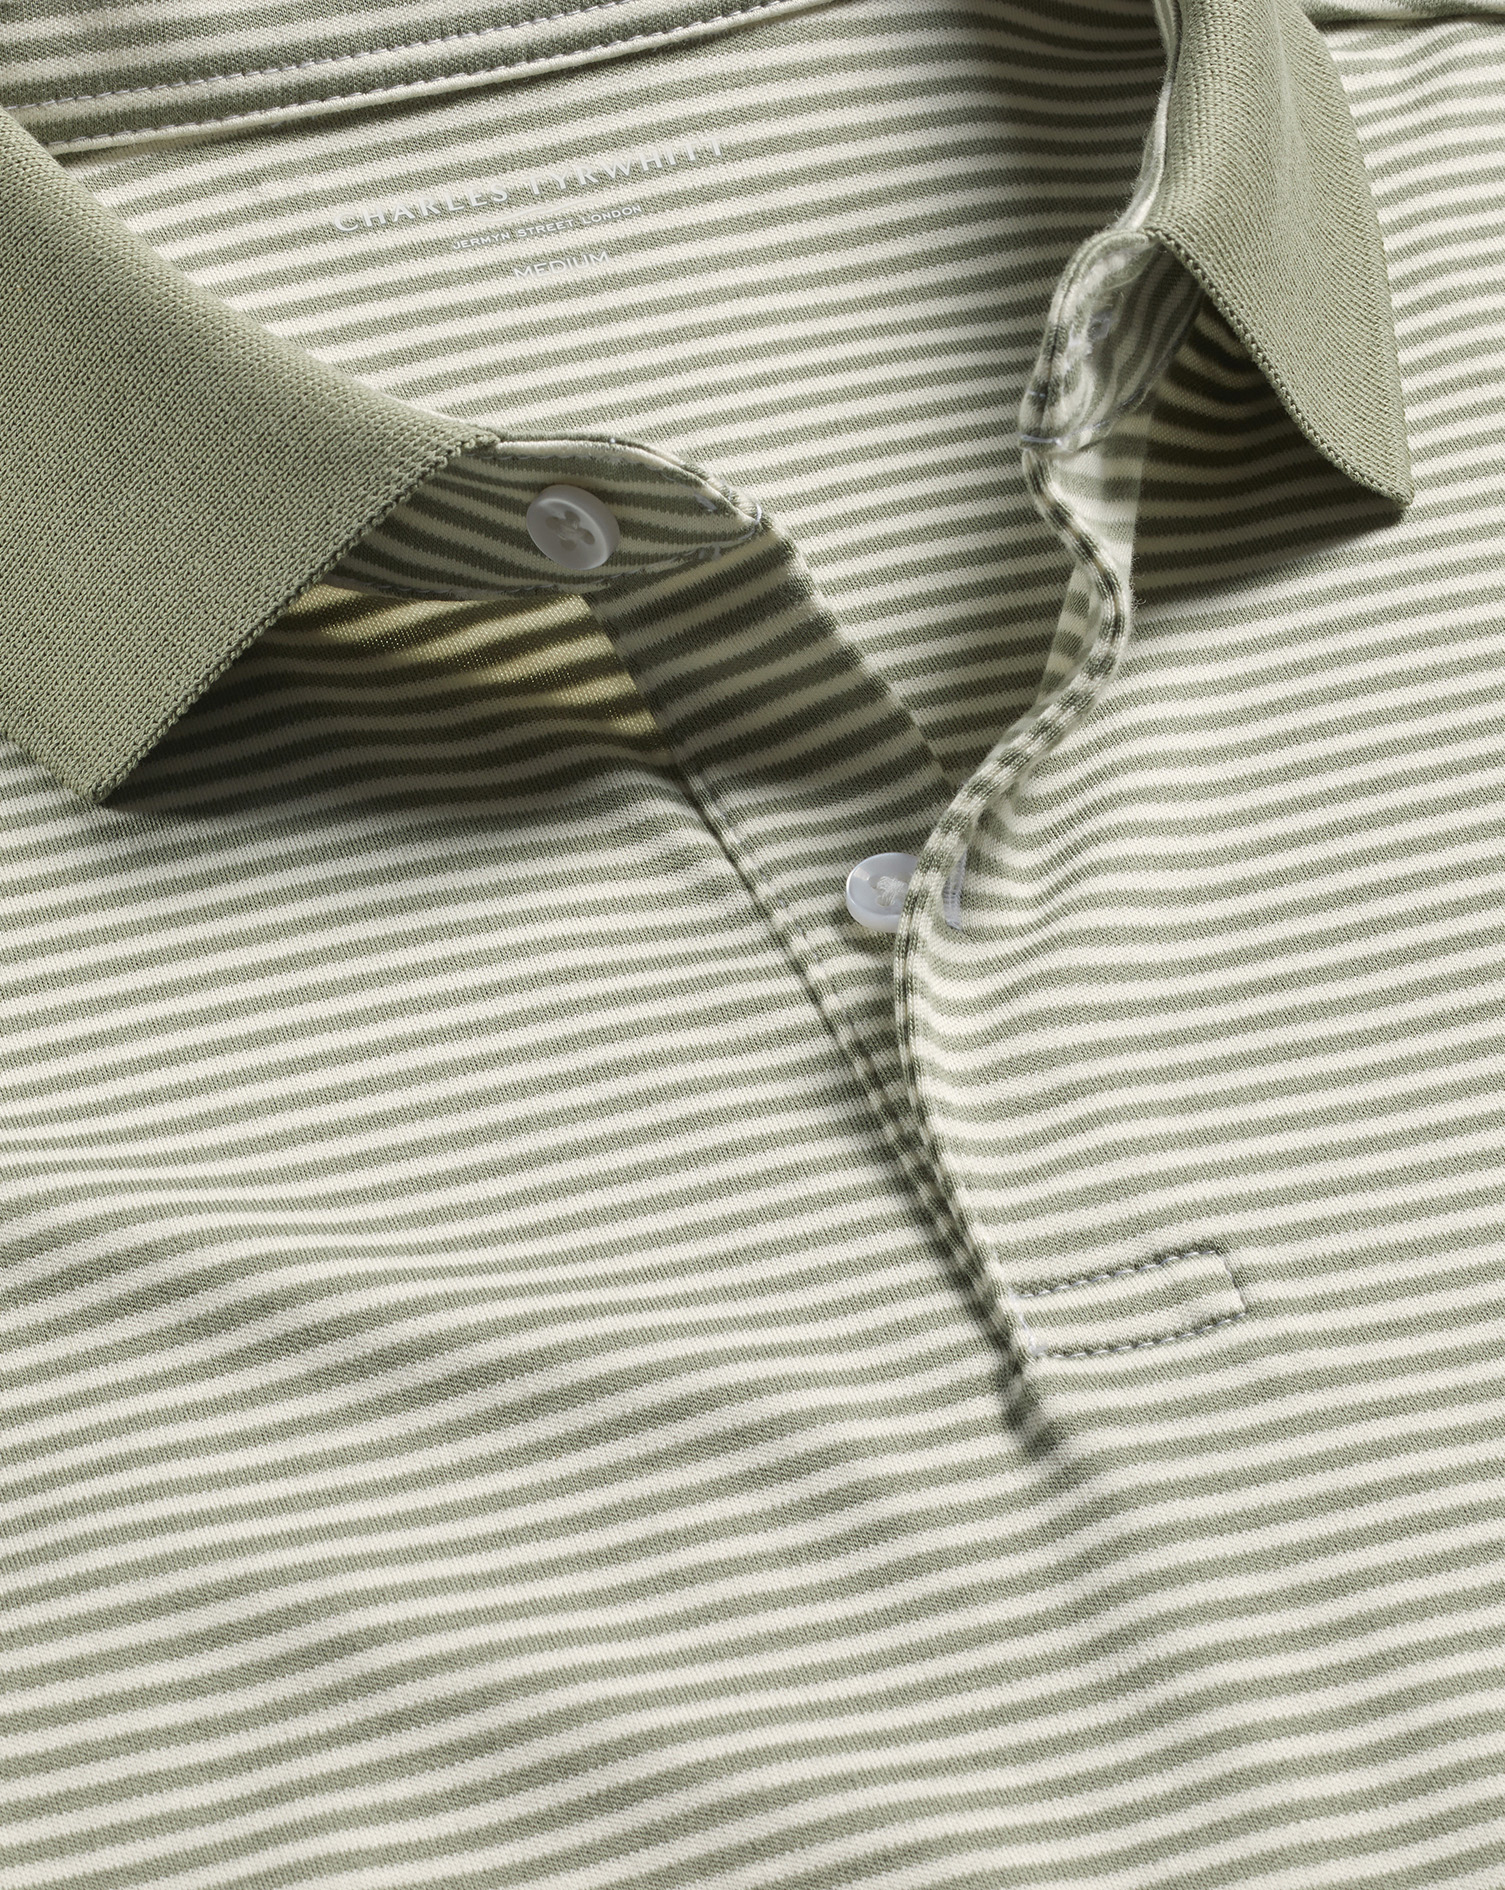 Men's Charles Tyrwhitt Fine Stripe Jersey Polo Shirt - Sage Green & Ecru Size Large Cotton
